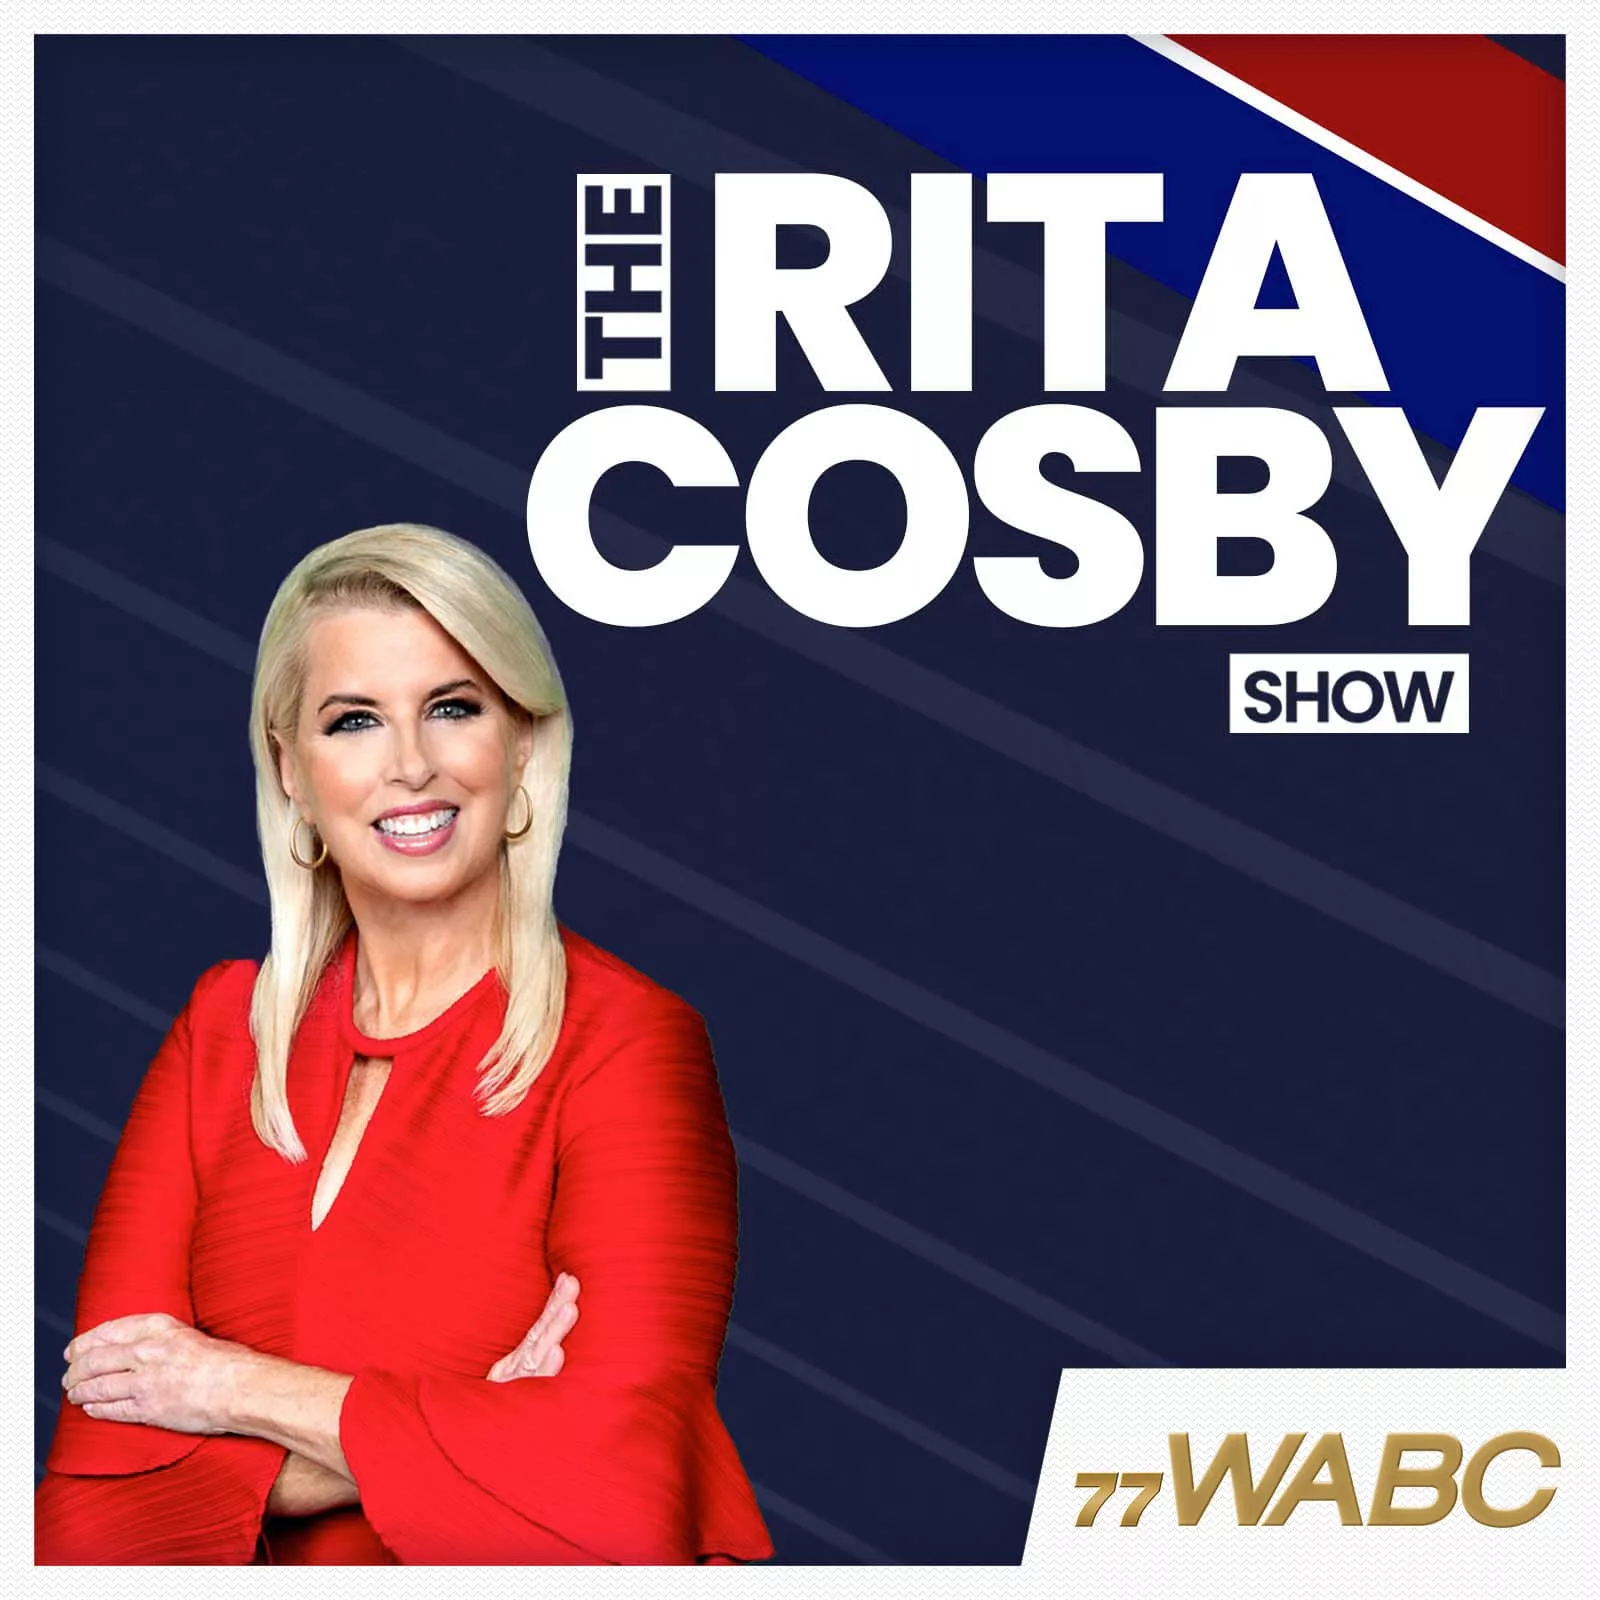 rita-cosby-podcast-new-logo635511